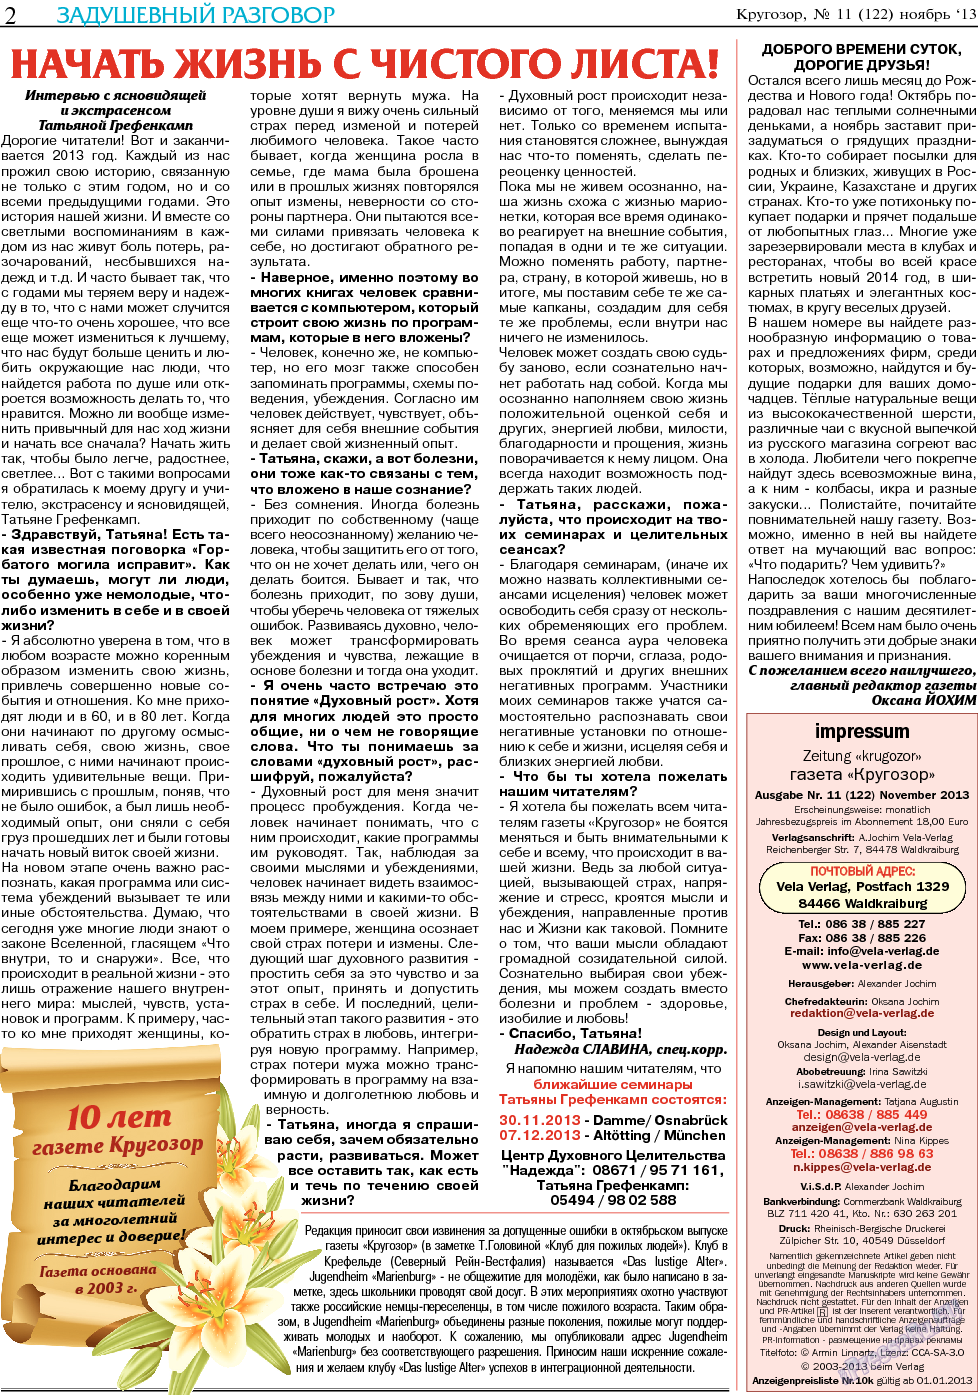 Кругозор (газета). 2013 год, номер 11, стр. 2